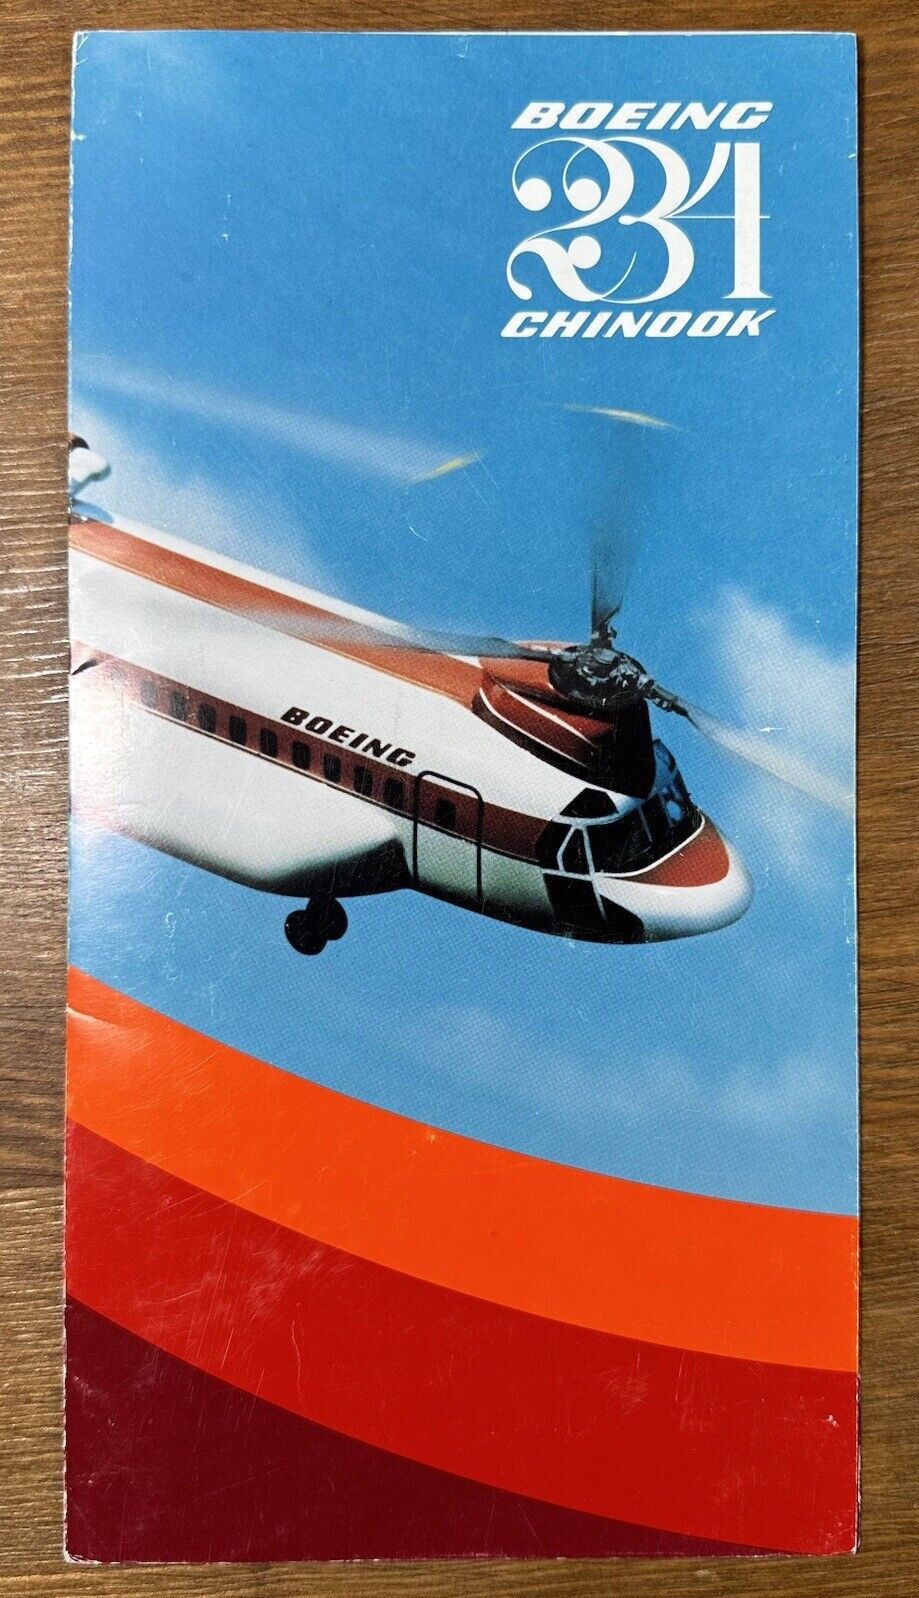 Vintage 1979 Boeing Vertol Advertising Brochure Model 234 Chinook Helicopter